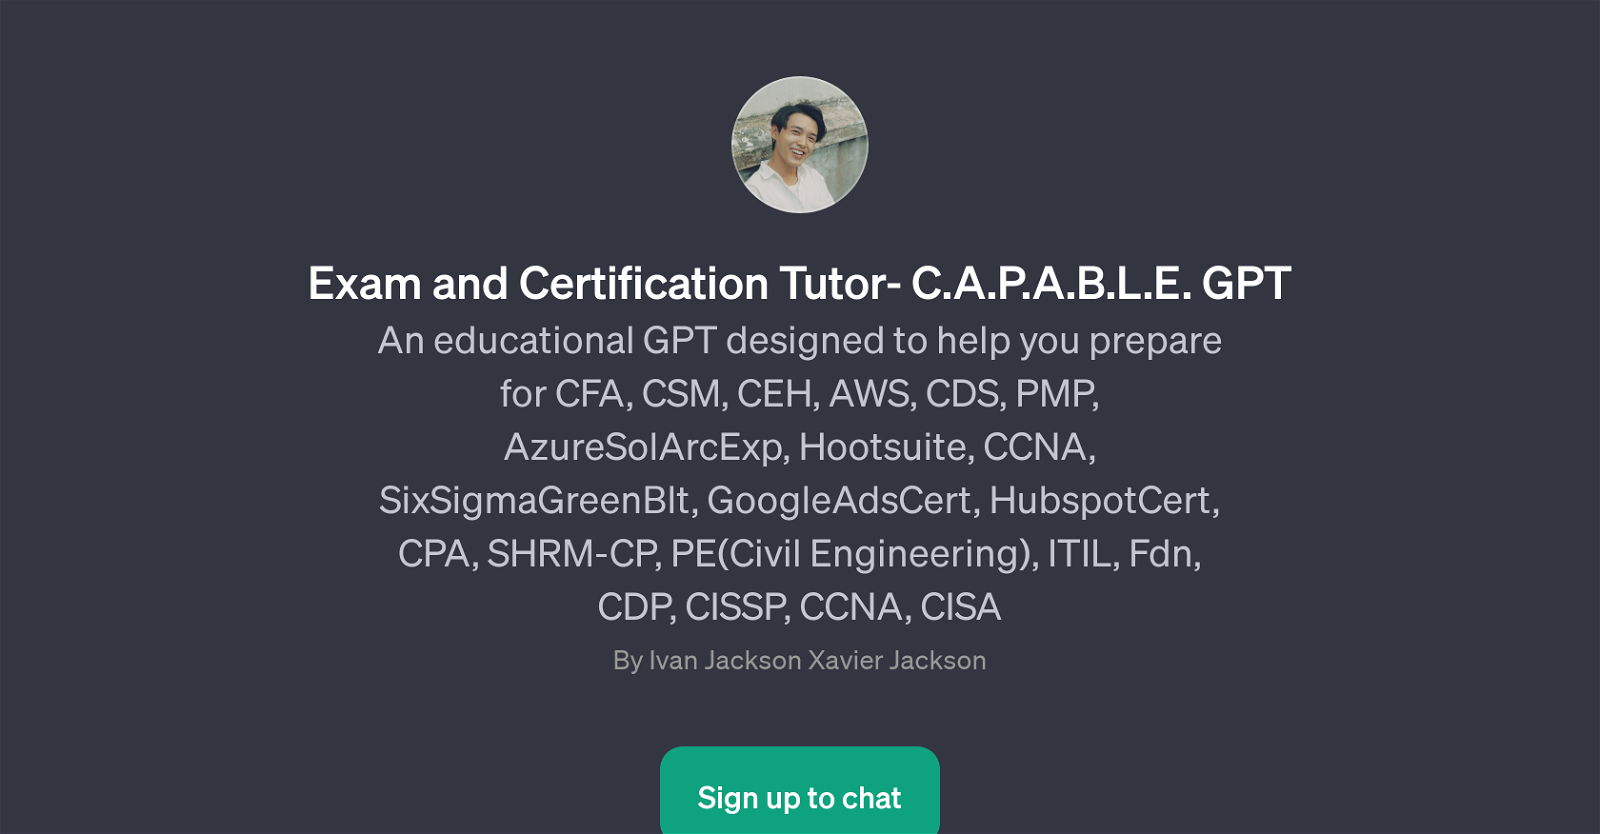 Exam and Certification Tutor- C.A.P.A.B.L.E. GPT website